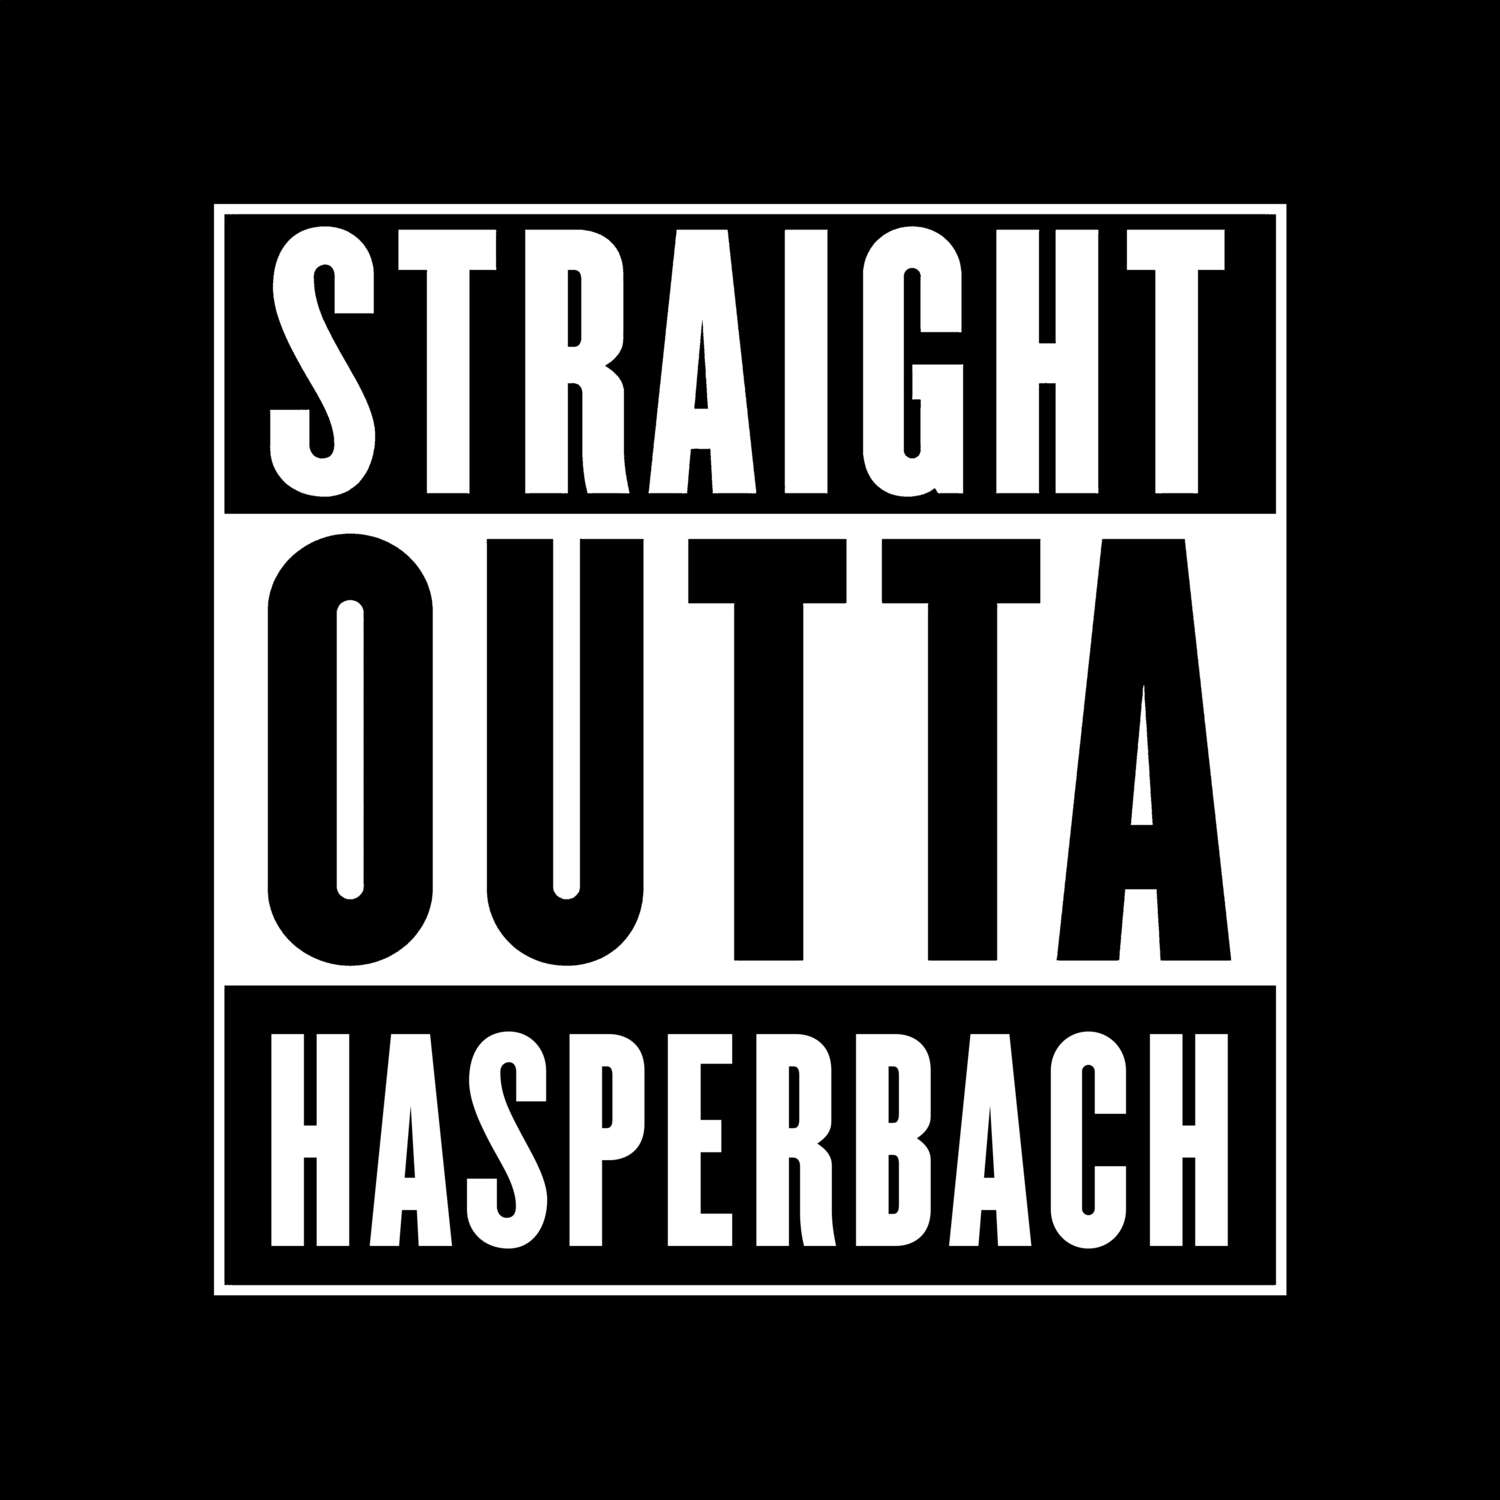 Hasperbach T-Shirt »Straight Outta«